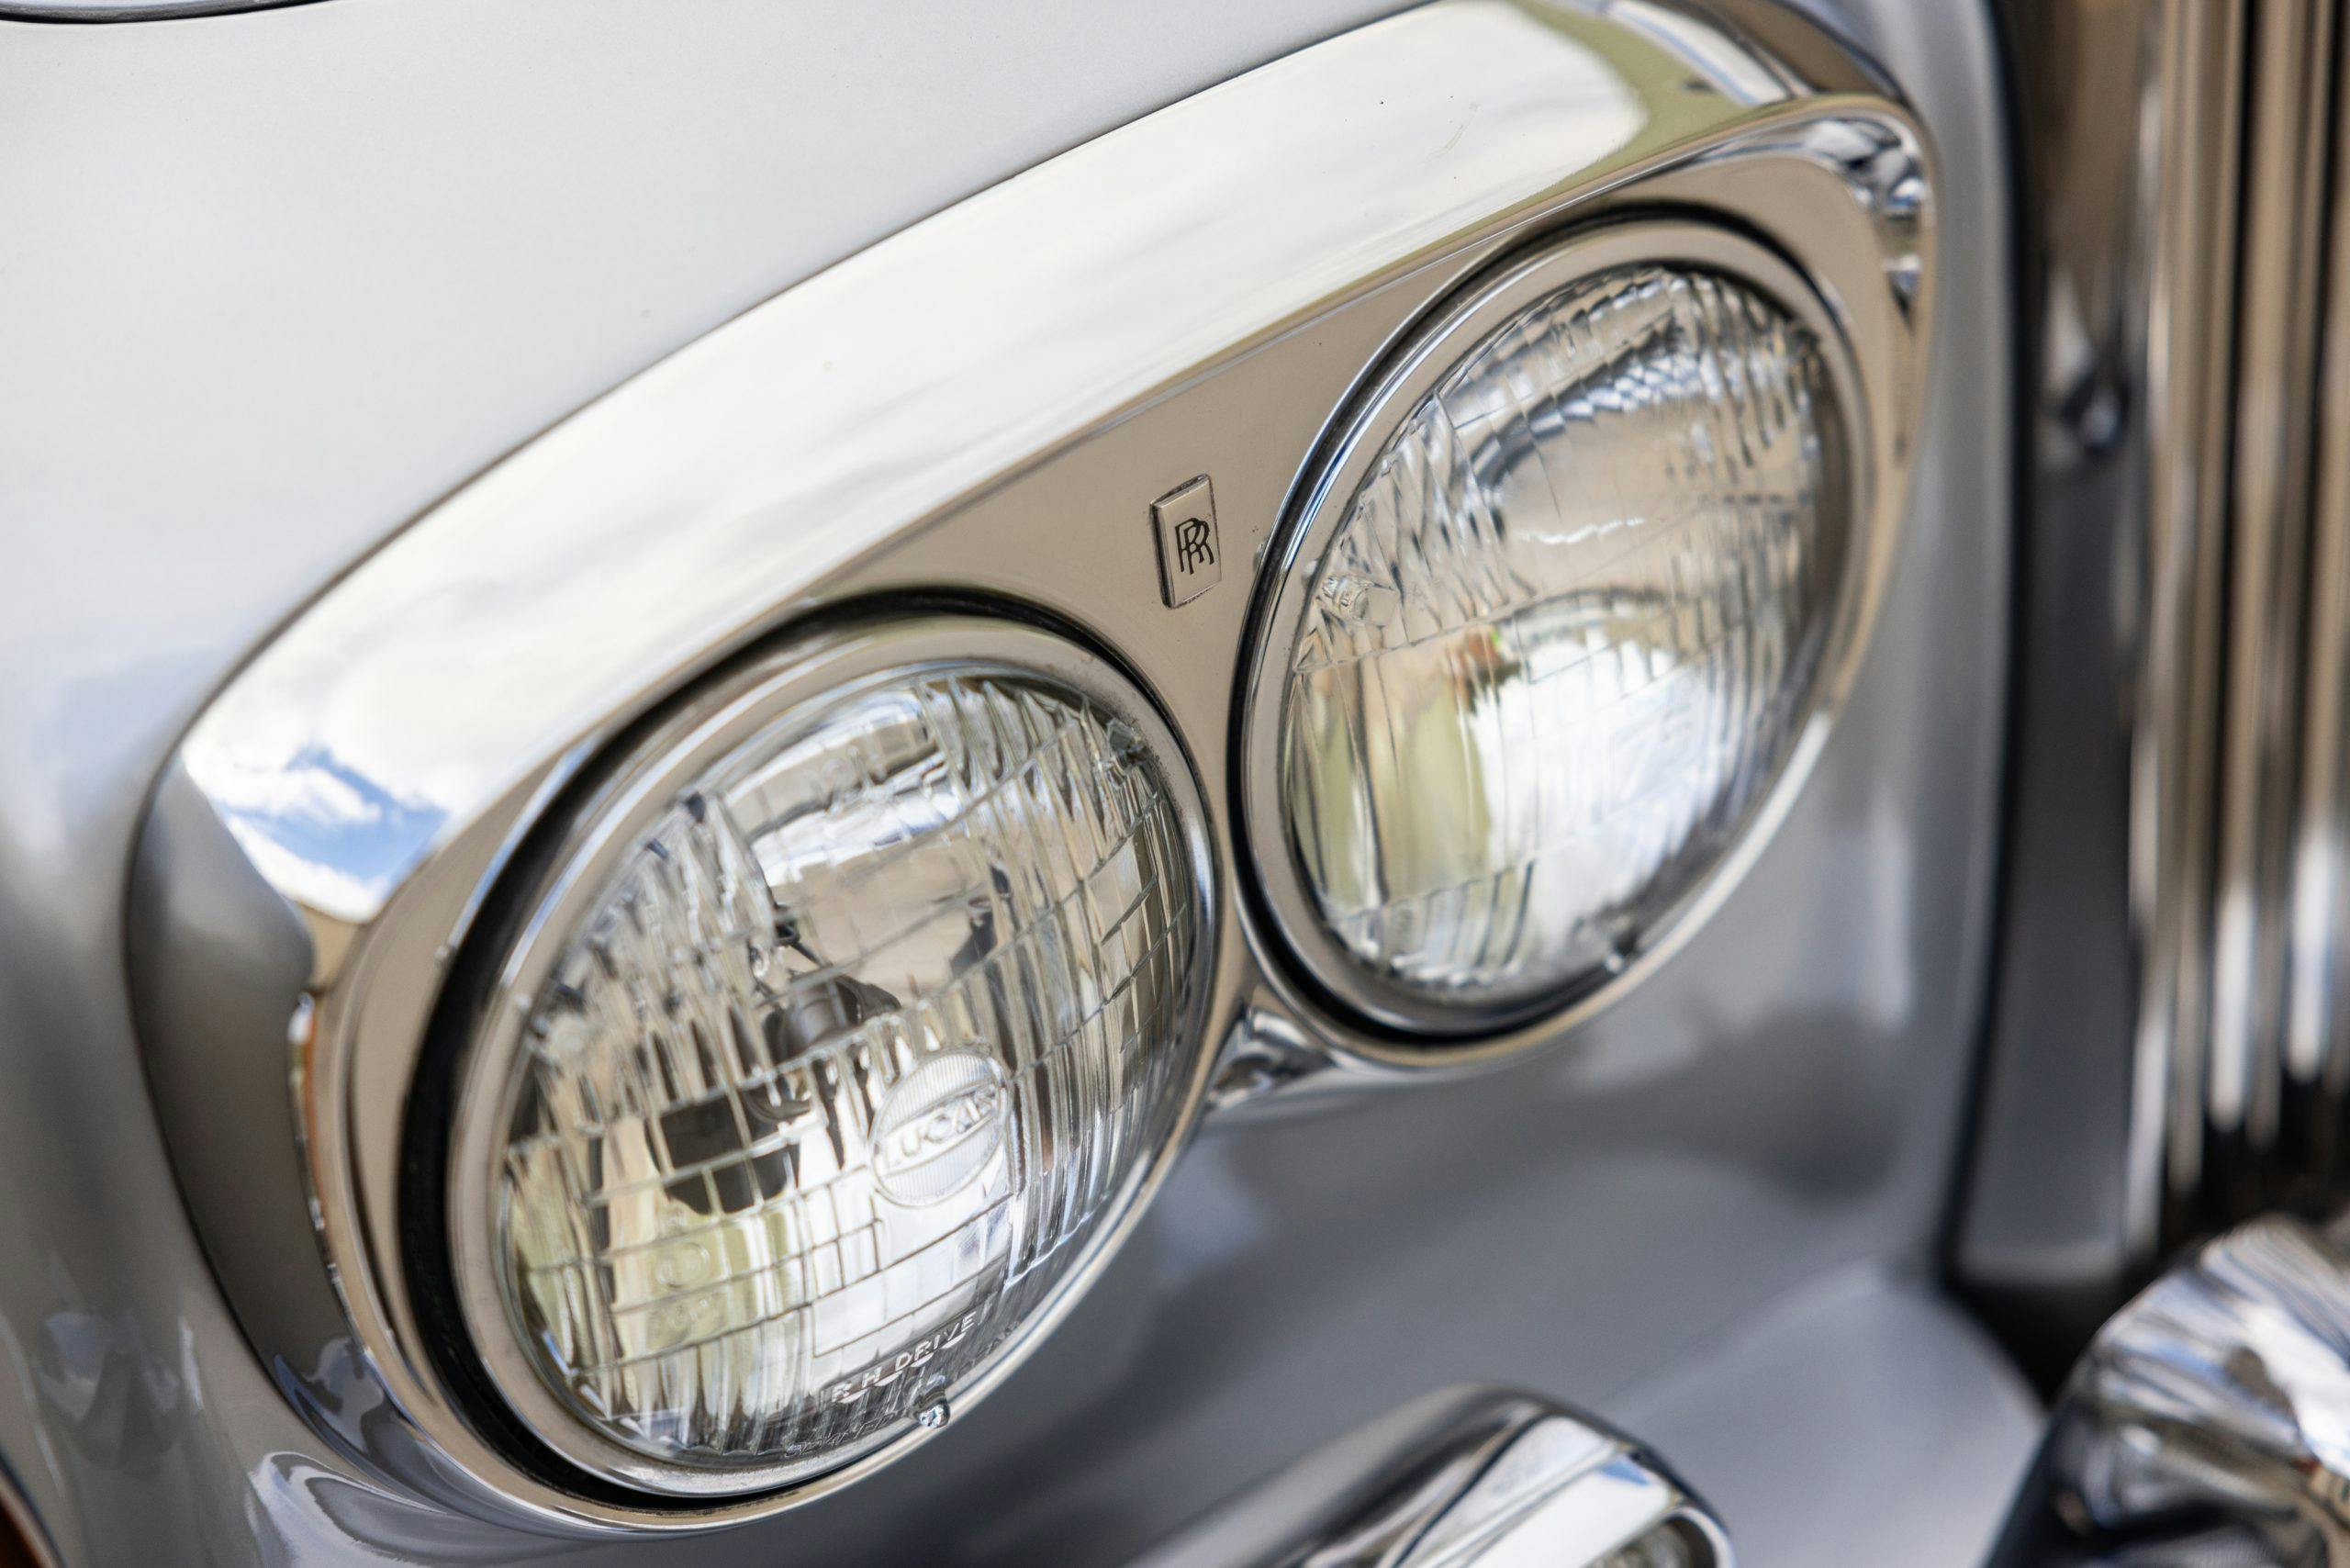 Freddy Mercury 1974 Rolls Royce Silver Shadow headlight detail